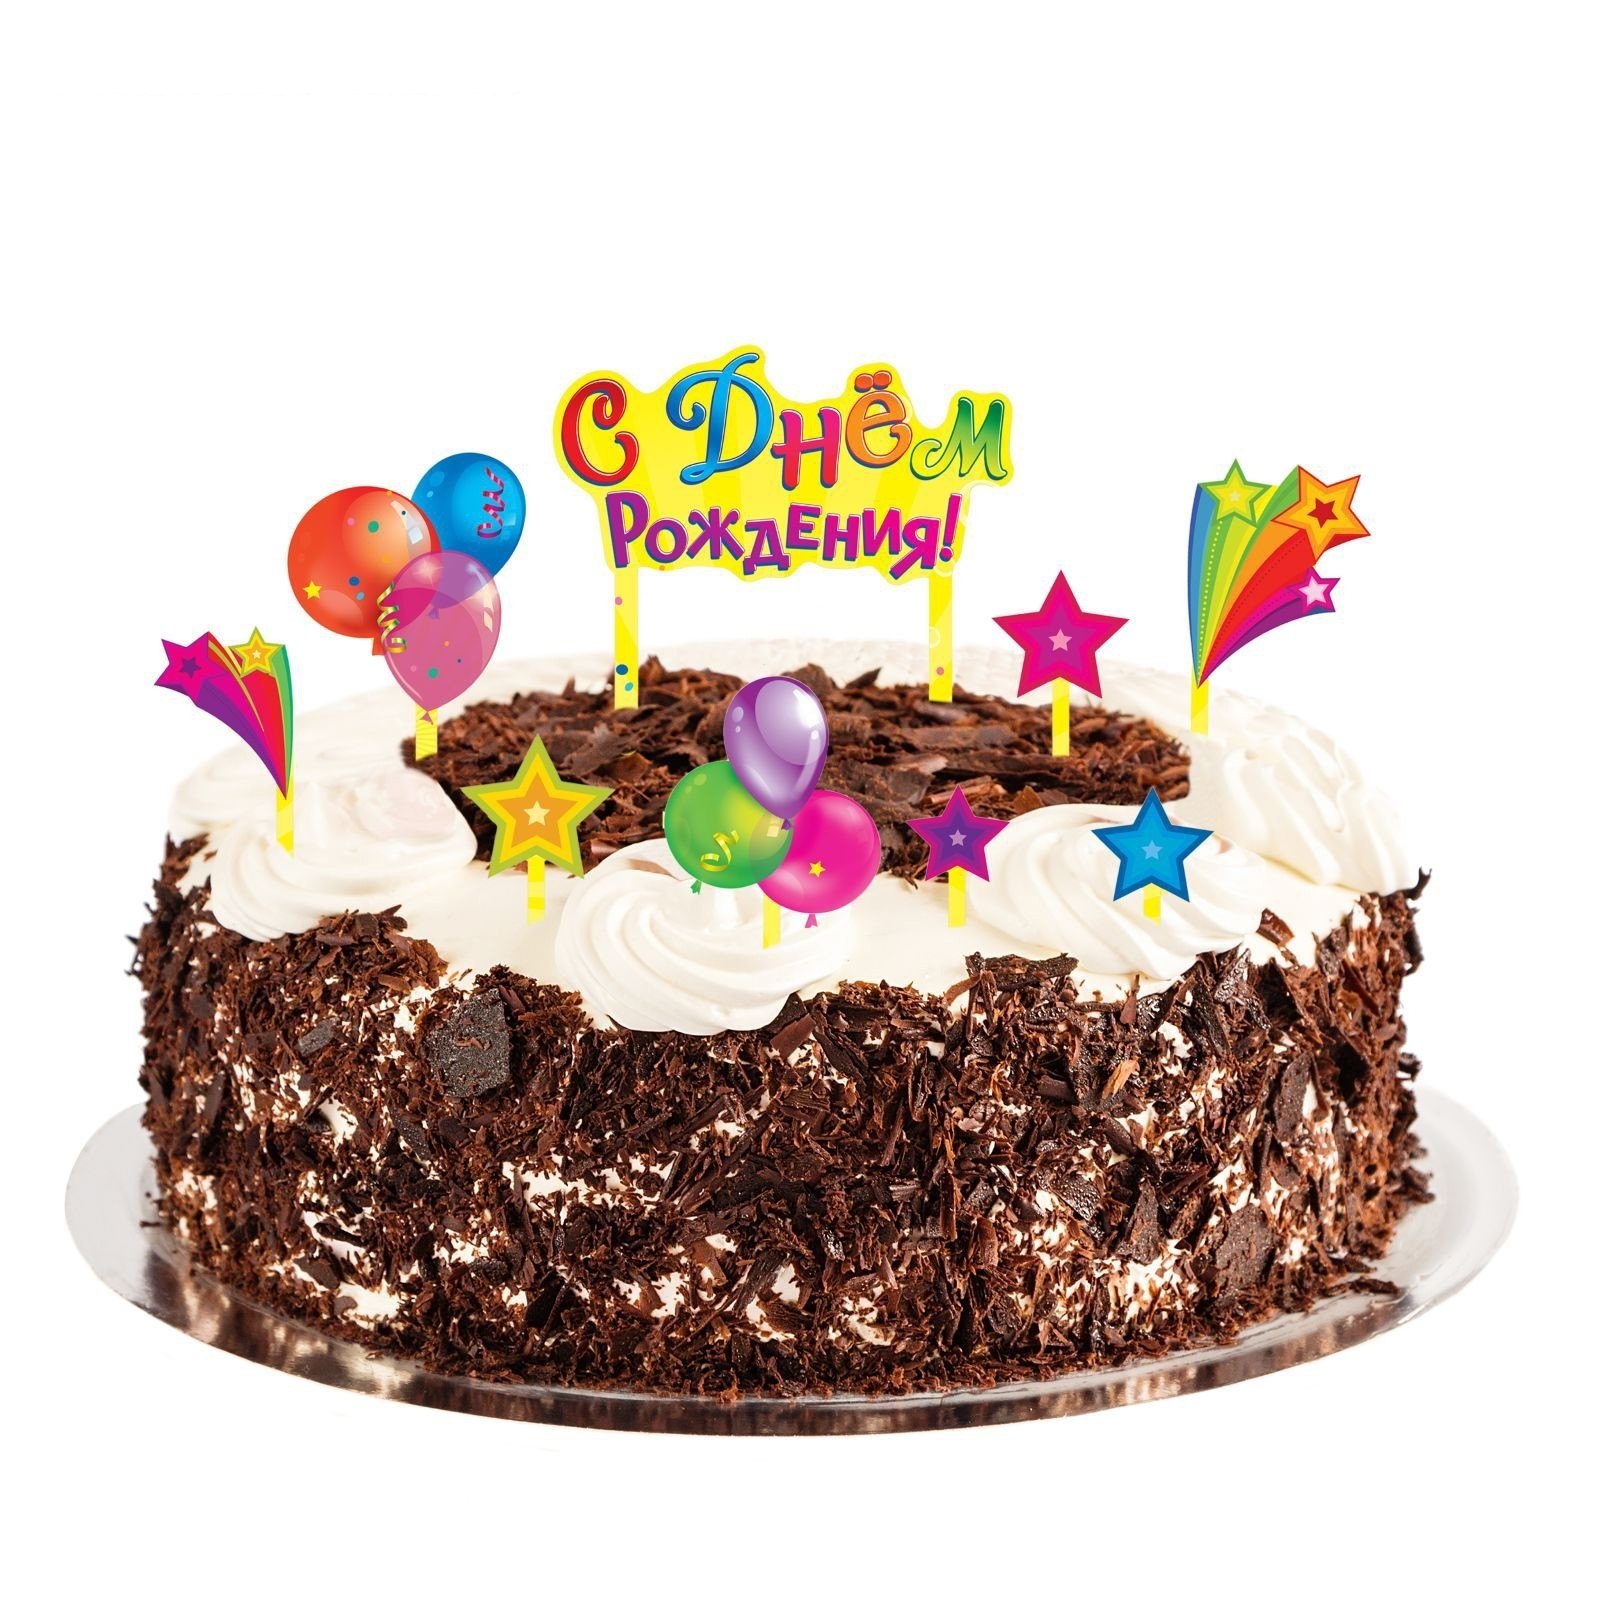 С днем рождения с тортом и шарами. Тортик с днем рождения. С днём рождения торт шарики. С днём рождения с тортом и шарами. Картинки с днем рождения торт шарики.